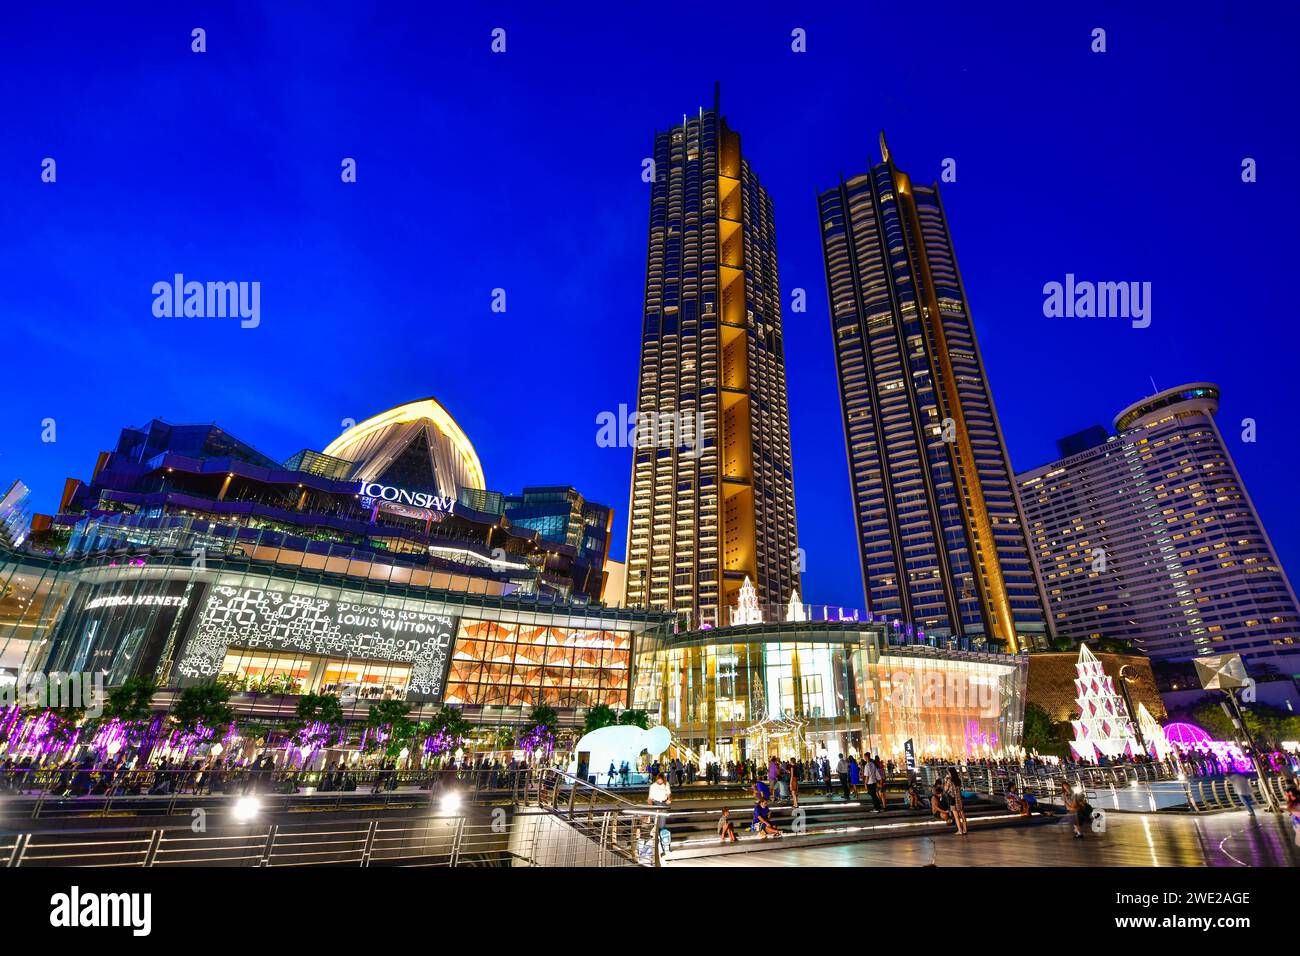 Bangkok, Thailandia - novembre 20,2020: Illuminazione Iconsiam e decorazioni colorate per celebrare l'evento di Capodanno lungo la baia di Chao Phraya Foto Stock